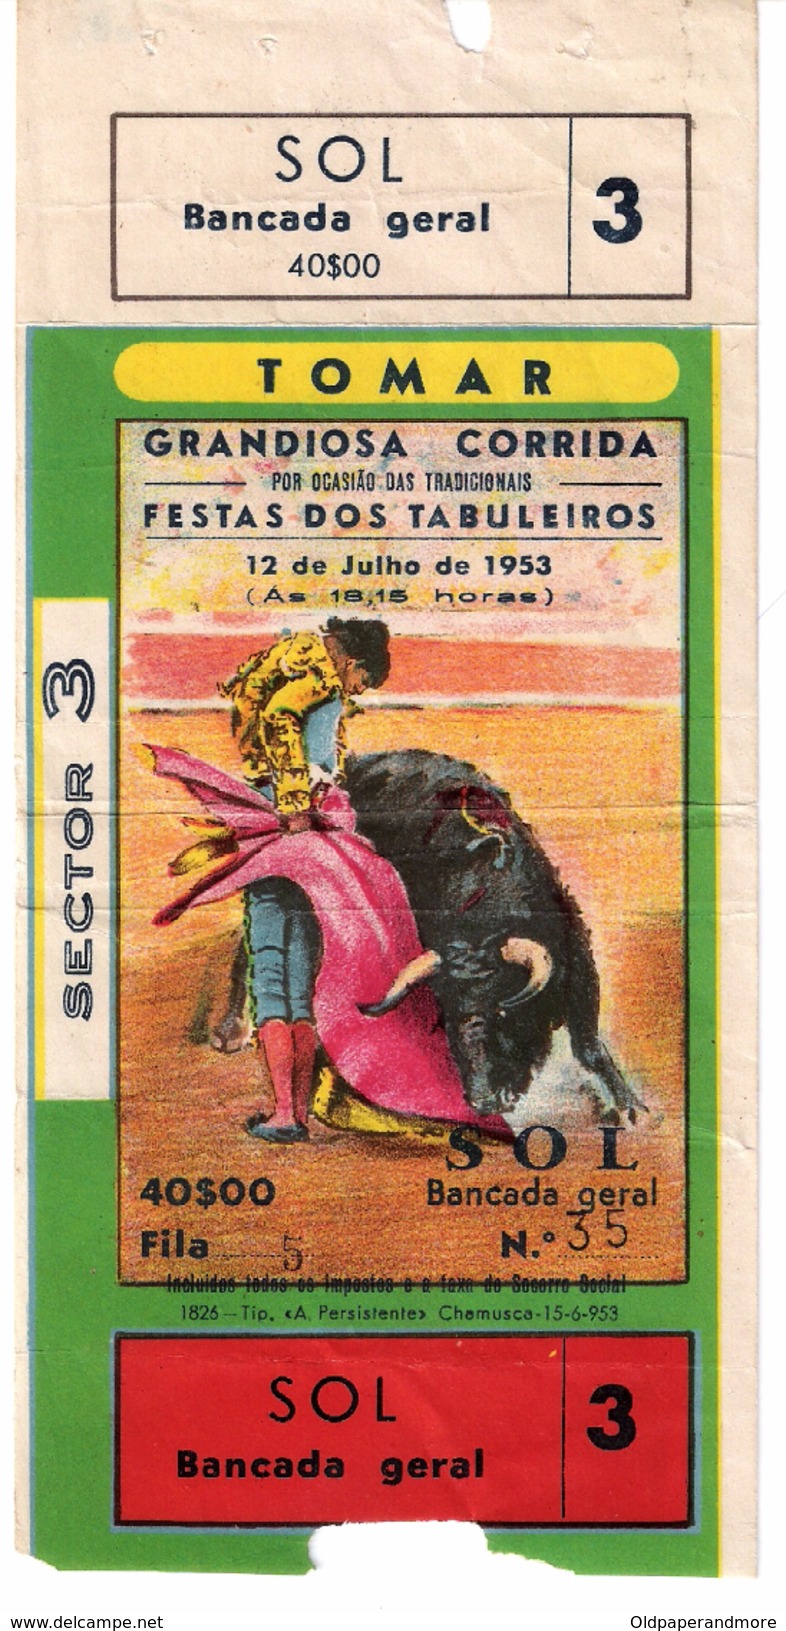 PORTUGAL TICKET BILLET CORRIDA TOMAR FESTA DOS TABULEIROS 1953 - TOROS BULL BULLFIGHT PLAZA DE TOROS - Tickets - Vouchers